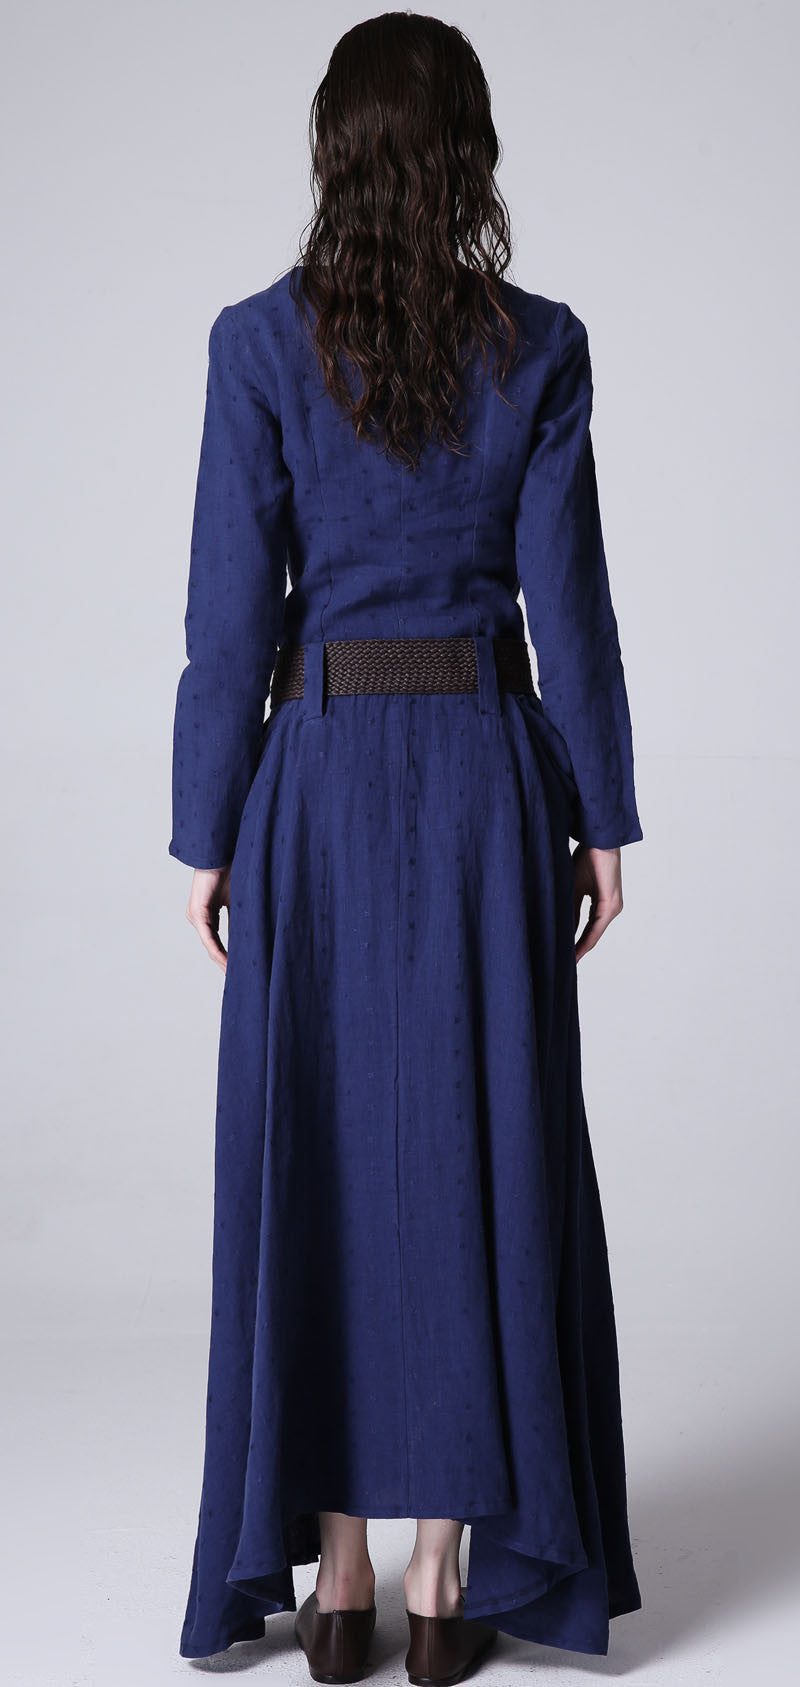 Blue dress maxi linen dress casual dress women dress 1183#